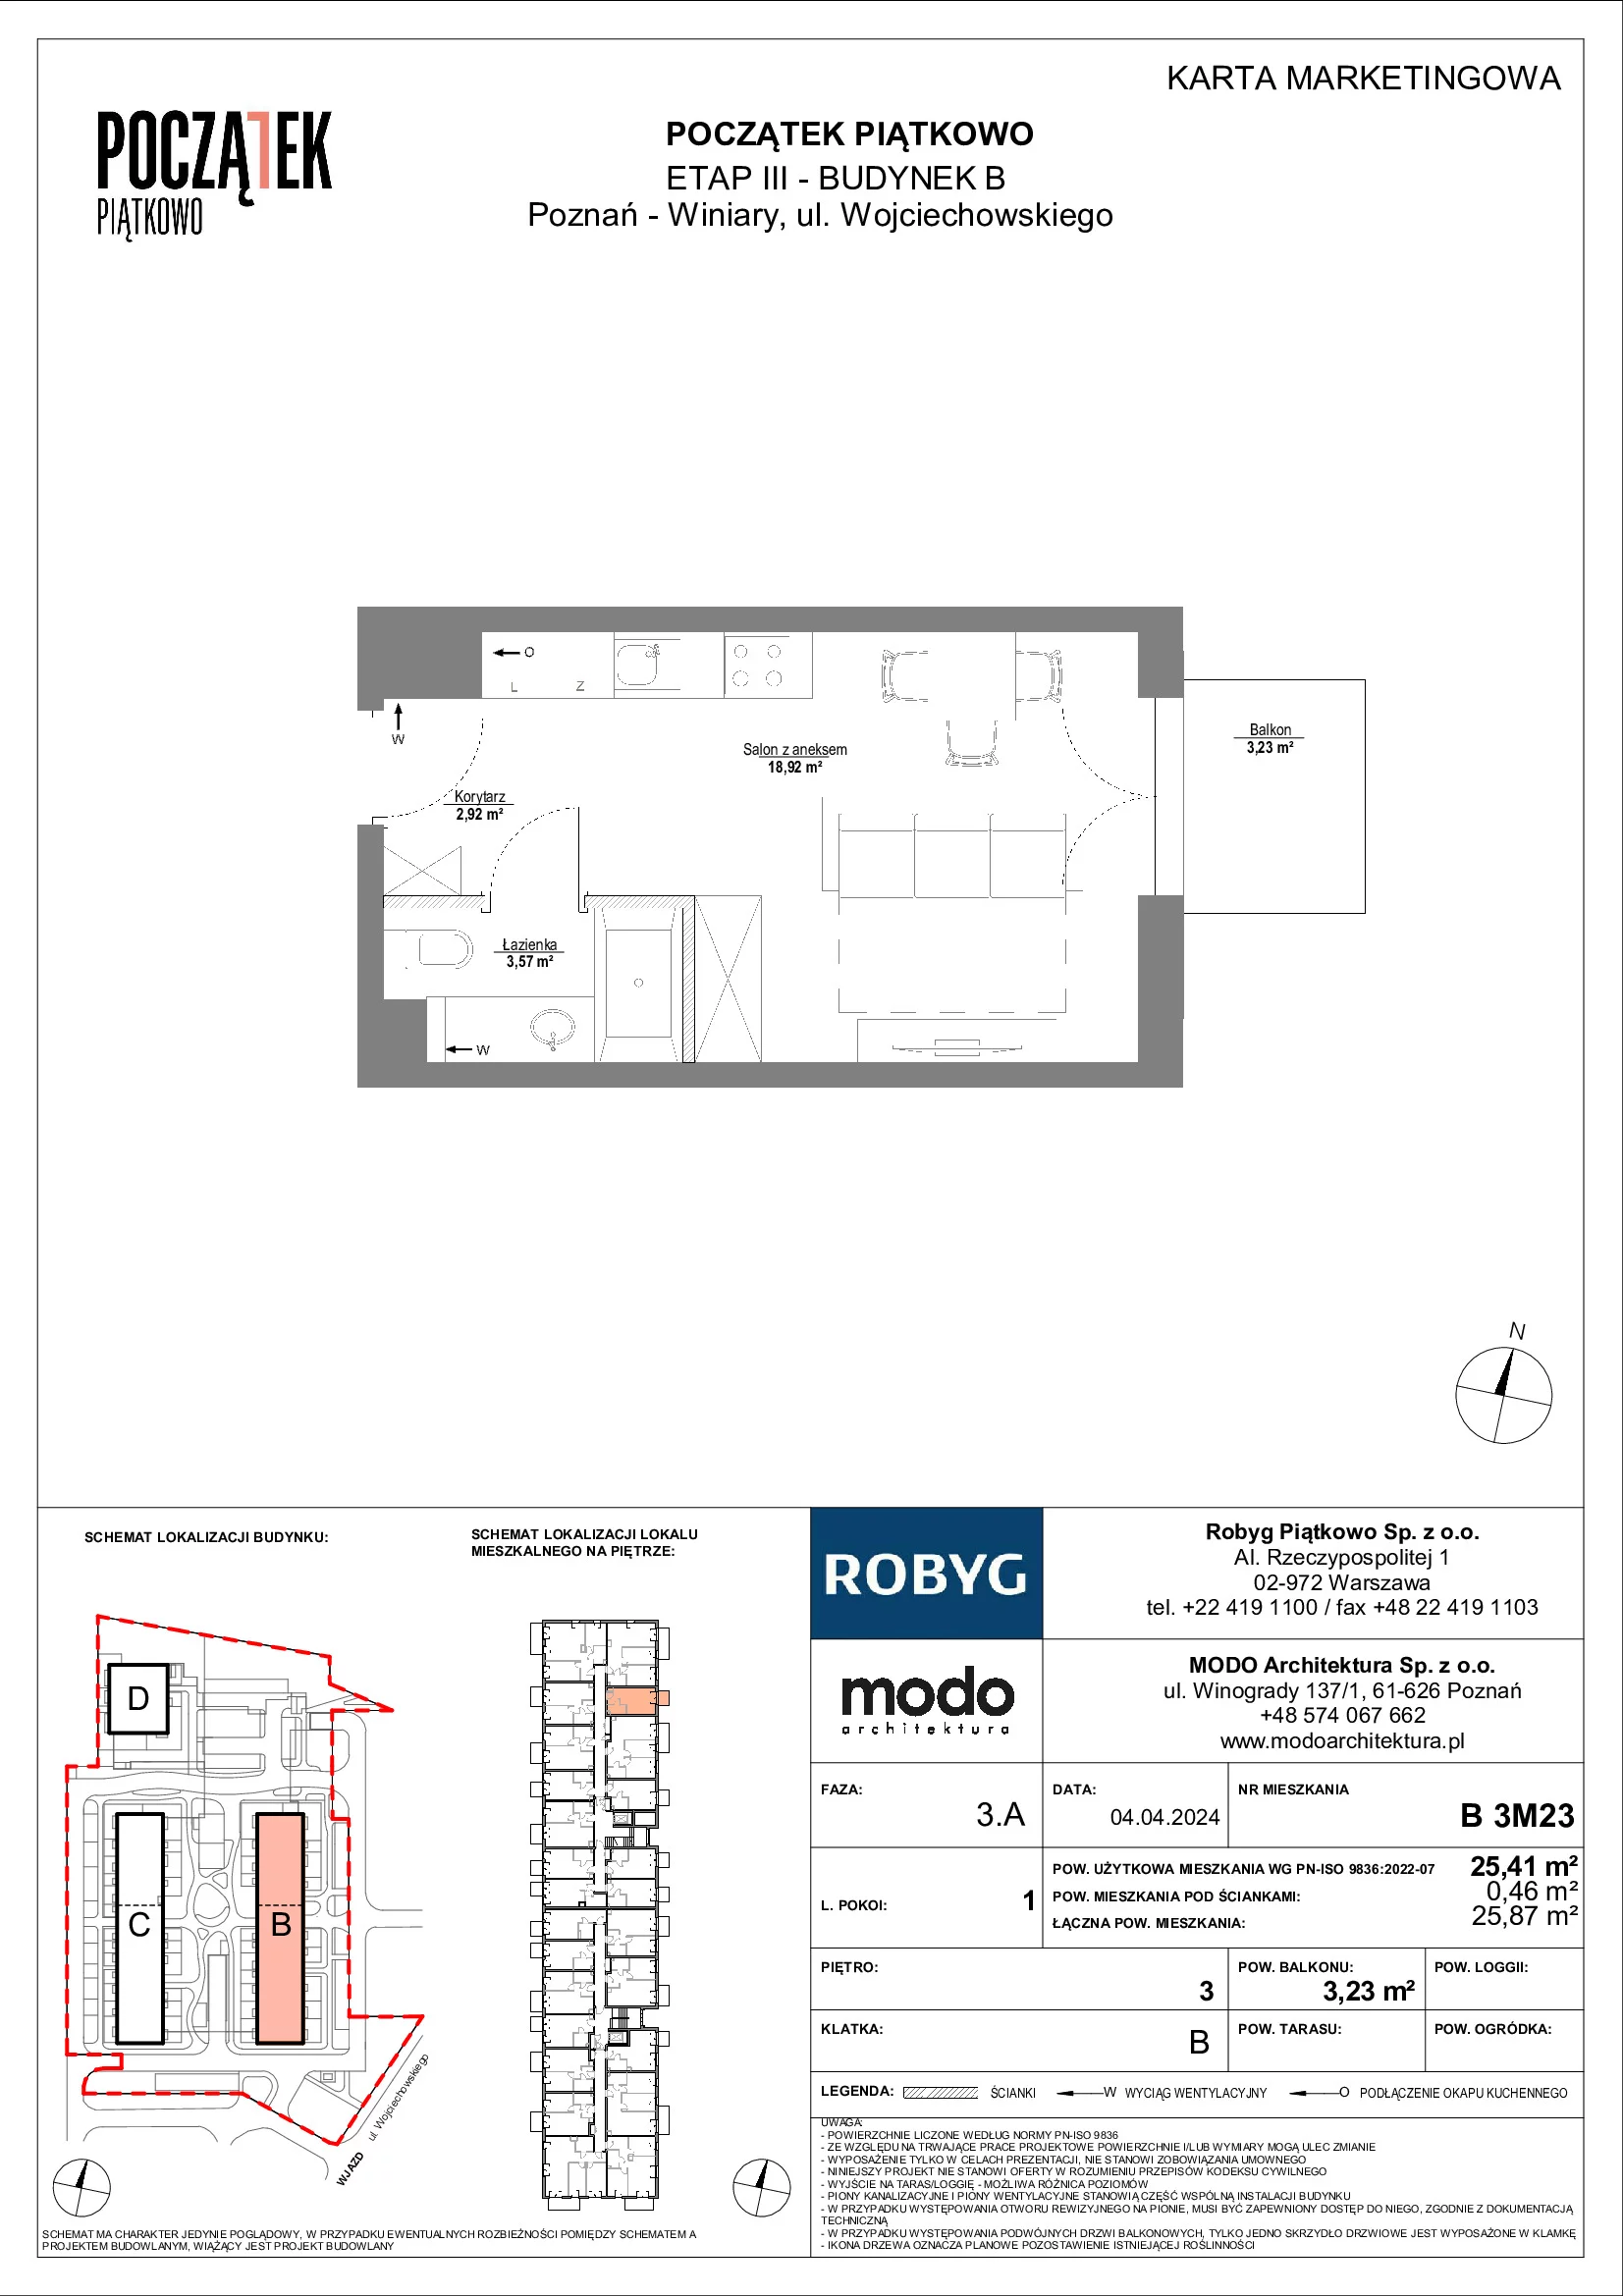 Mieszkanie 25,41 m², piętro 3, oferta nr B.3M23, Początek Piątkowo, Poznań, Piątkowo, ul. Wojciechowskiego